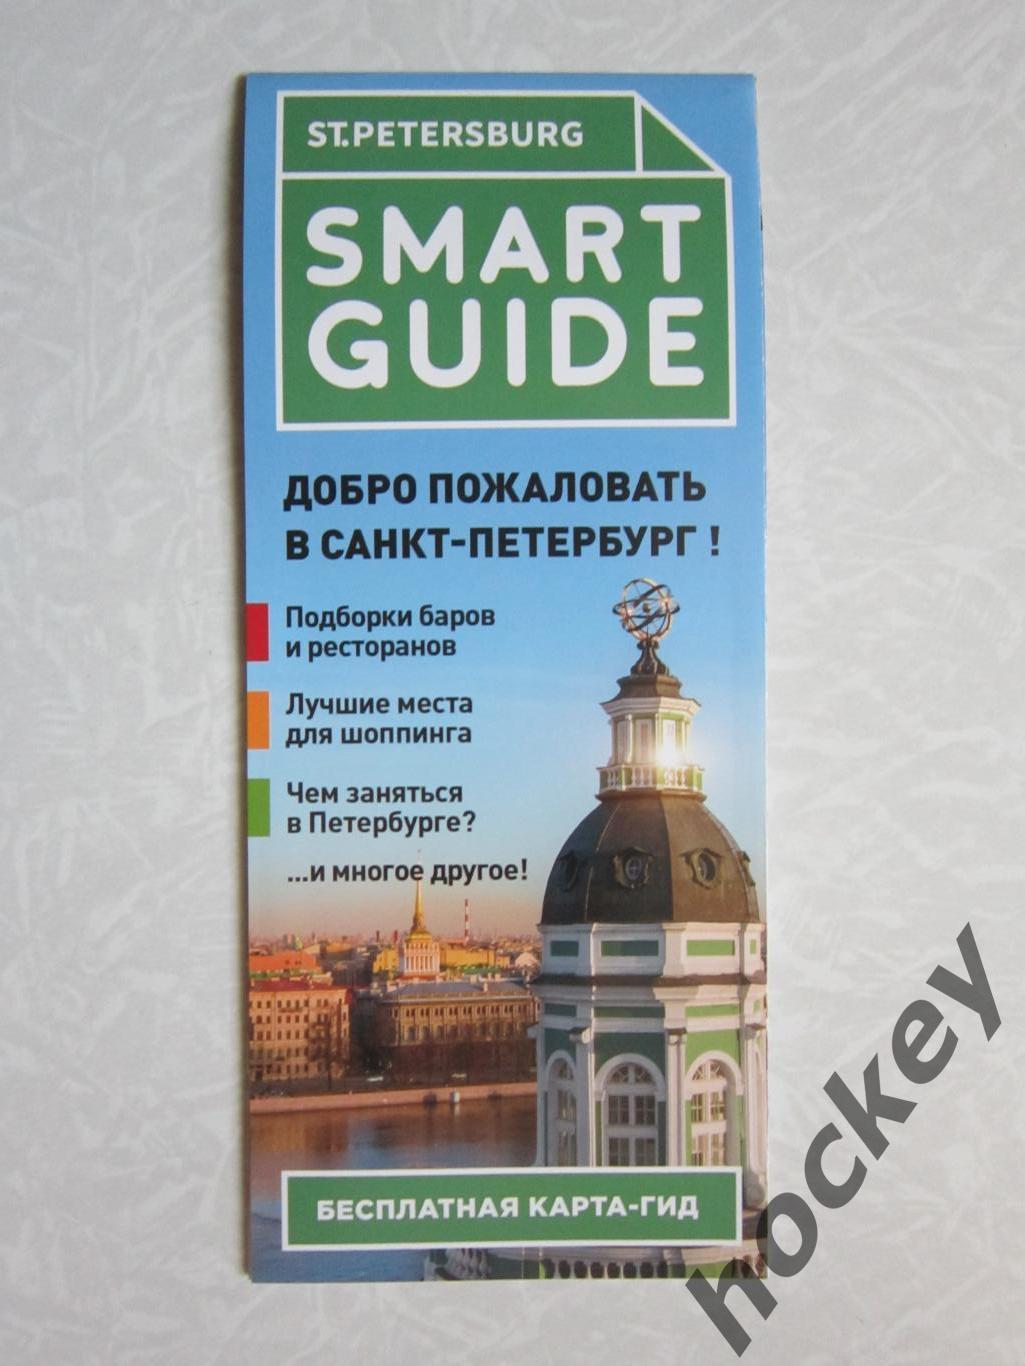 Карта-гид: Санкт-Петербург - достопримечательности и др. (на русском языке)